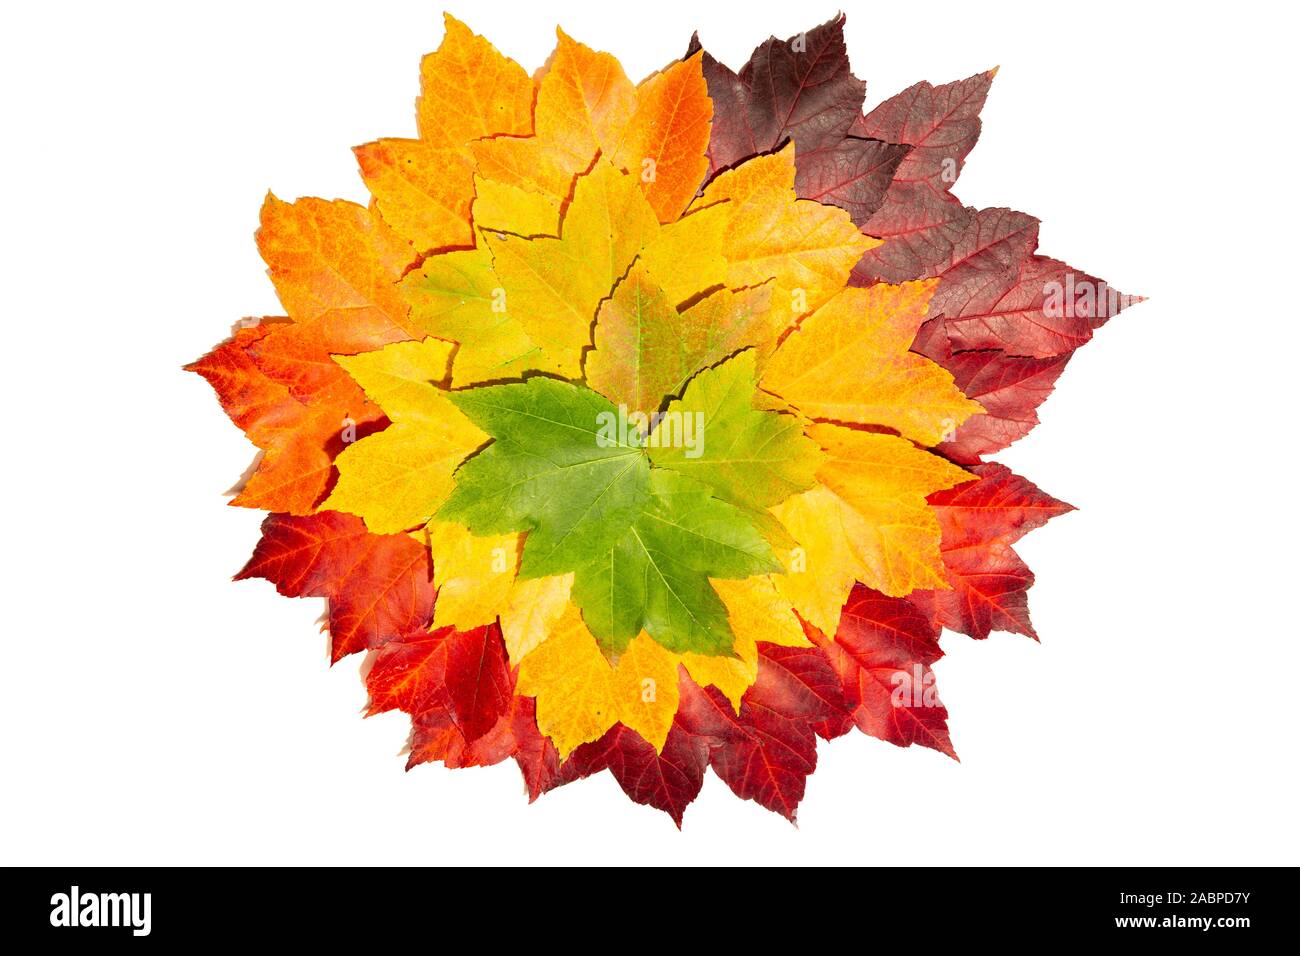 Les feuilles d'automne avec des tons de couleurs du vert au rouge Banque D'Images